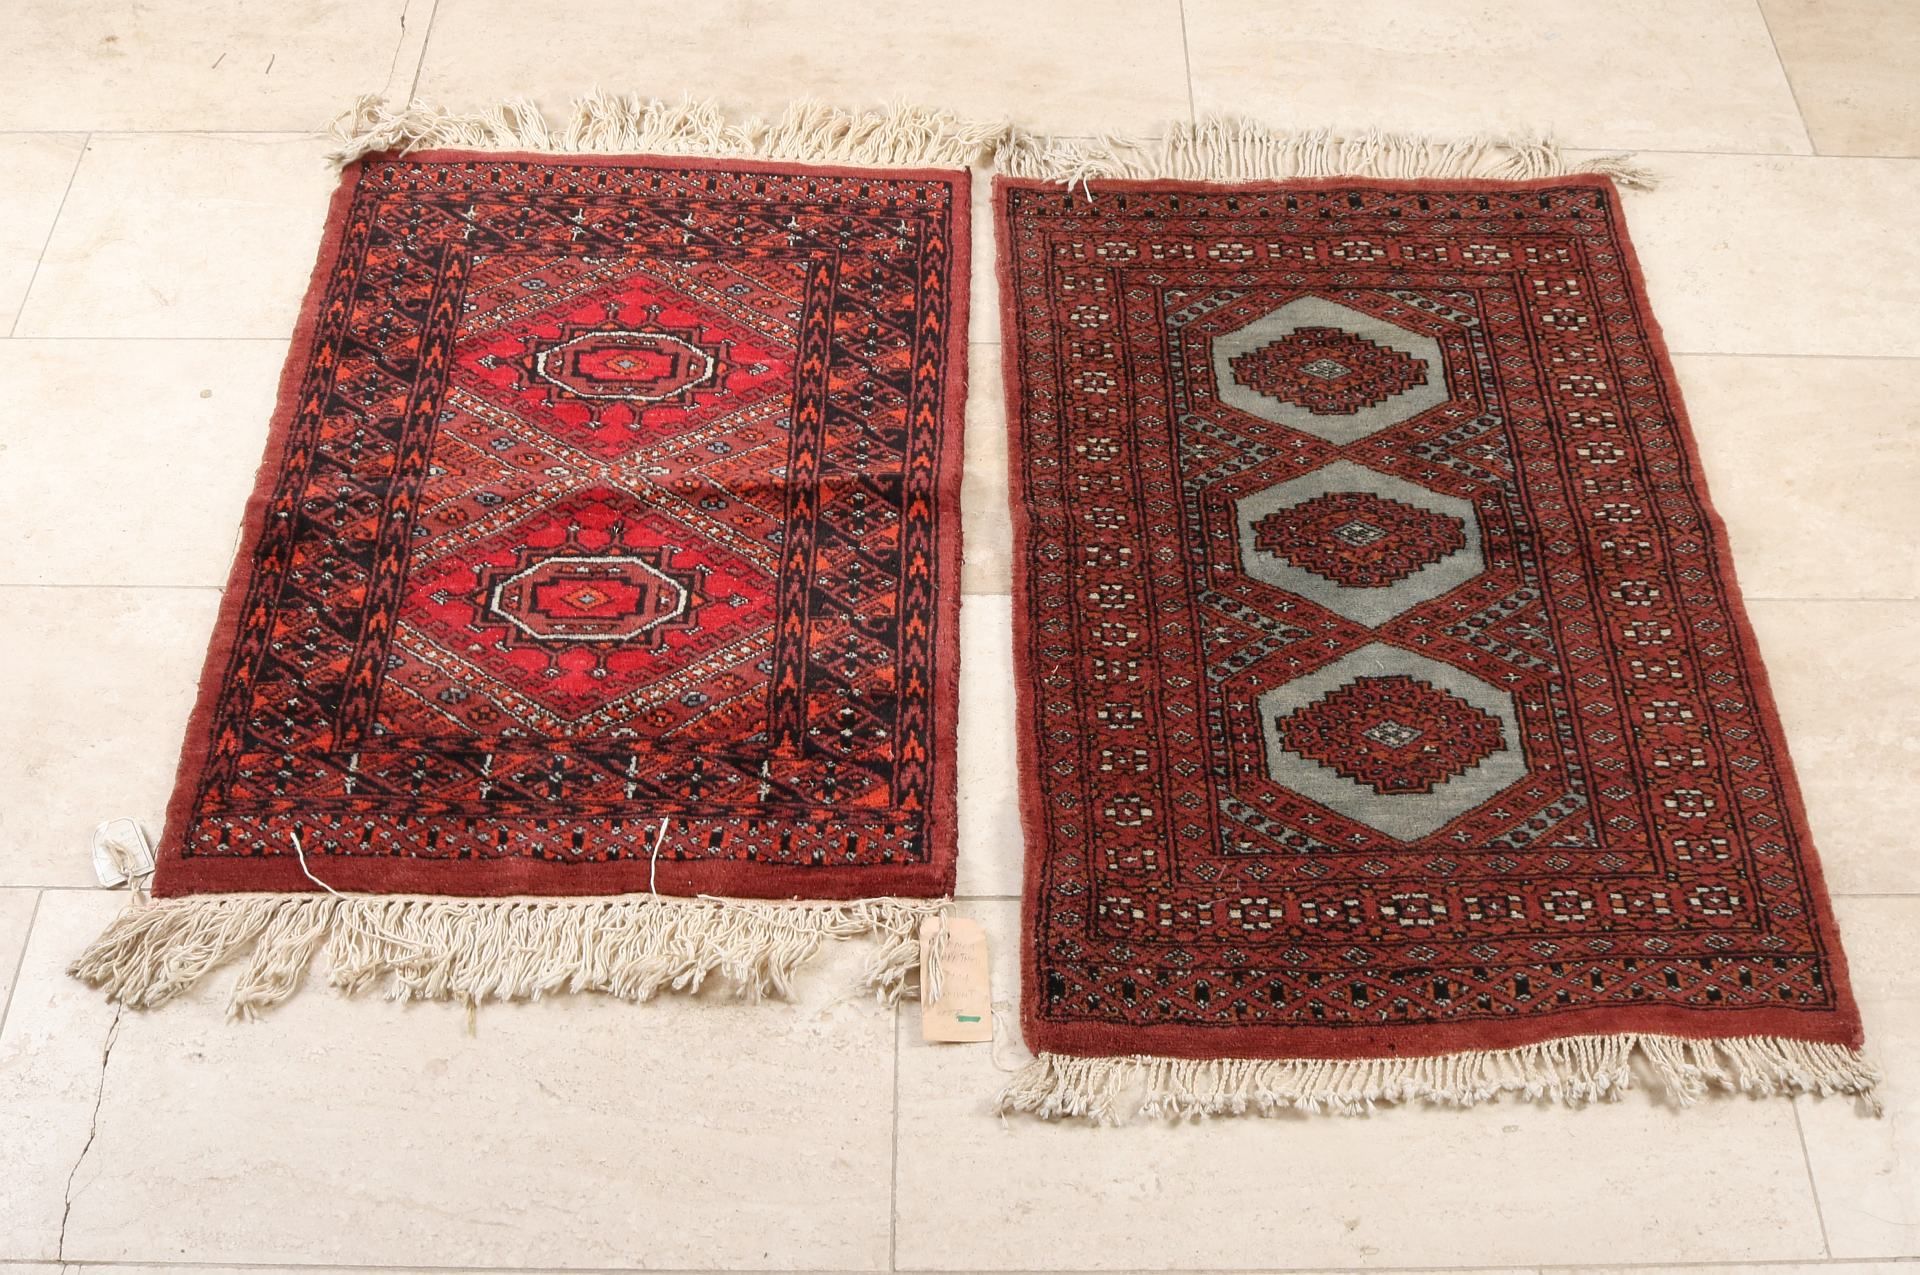 2 Persian rugs